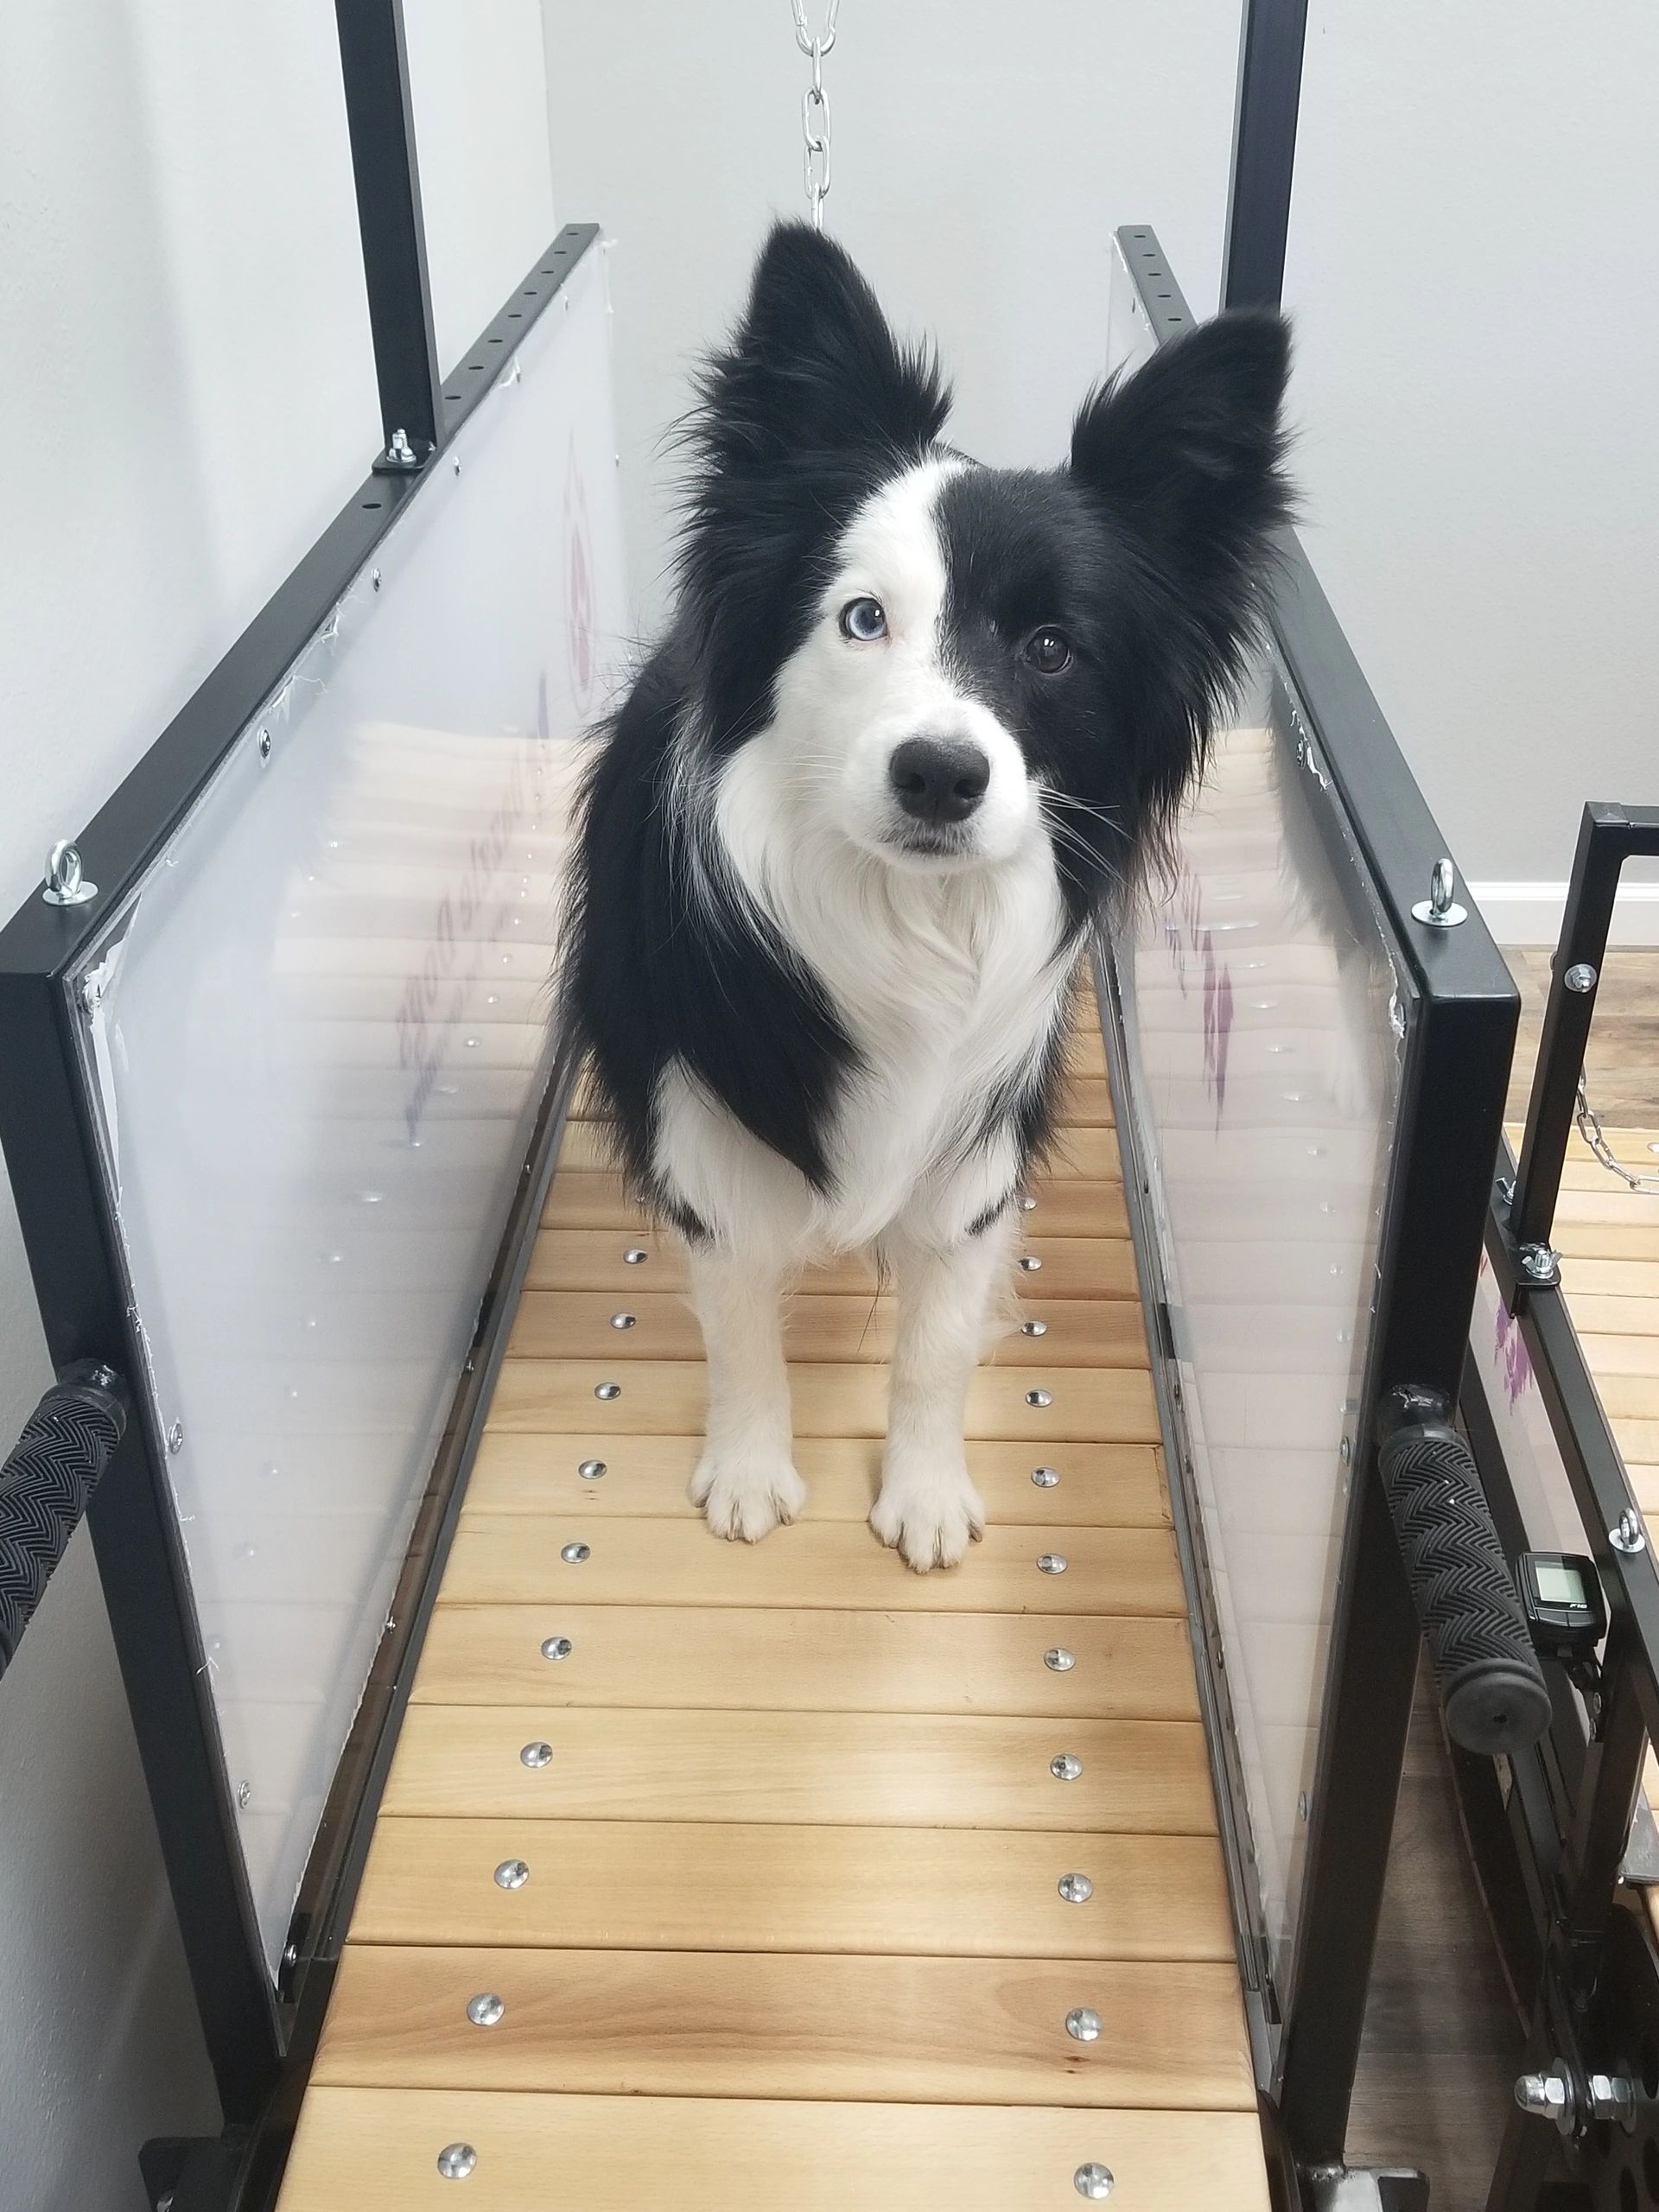 Treadmills (slat mills) for dogs, Dogmills